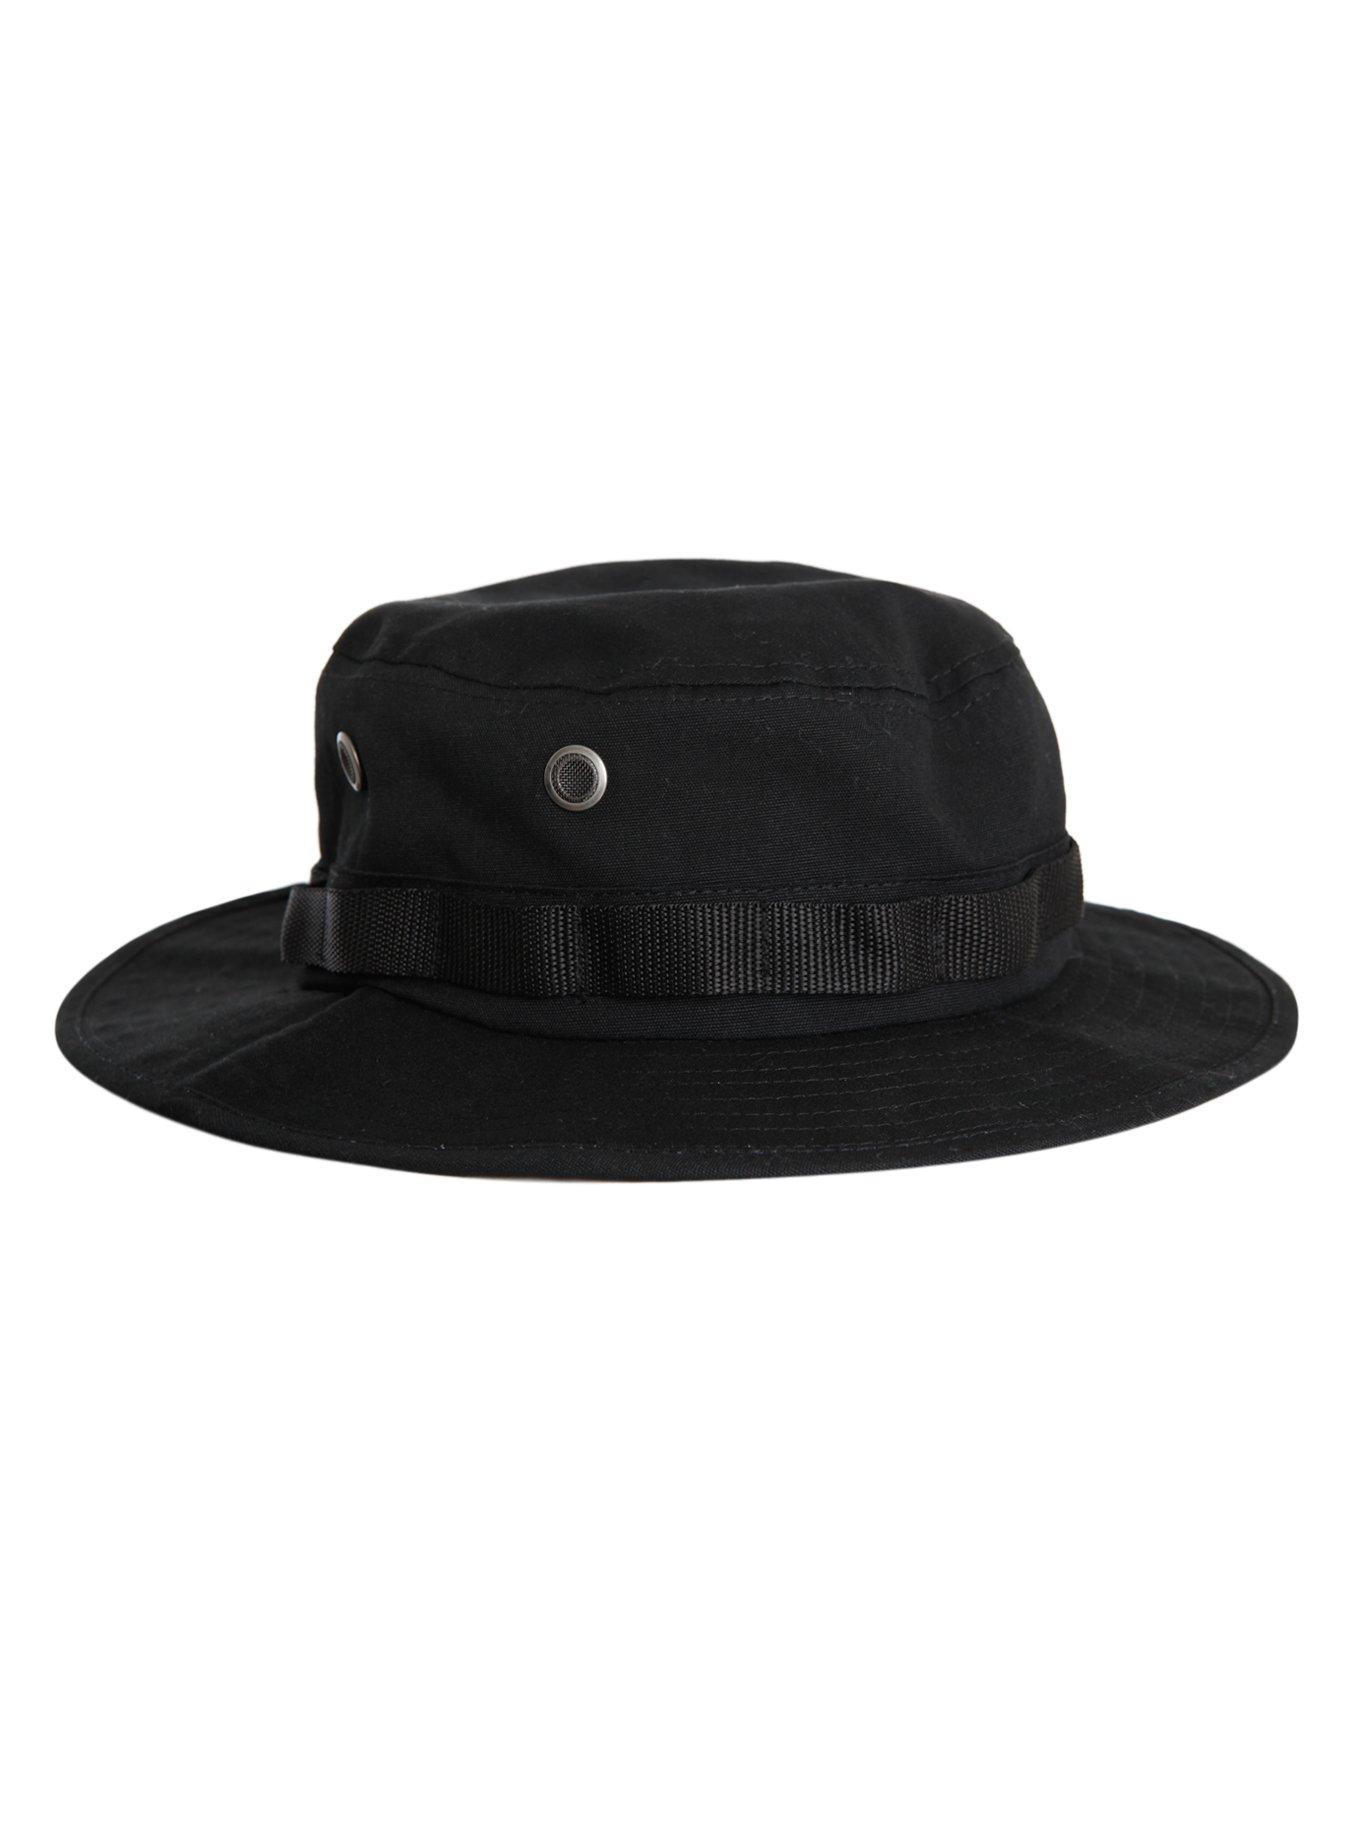 Black Boonie Hat, , alternate